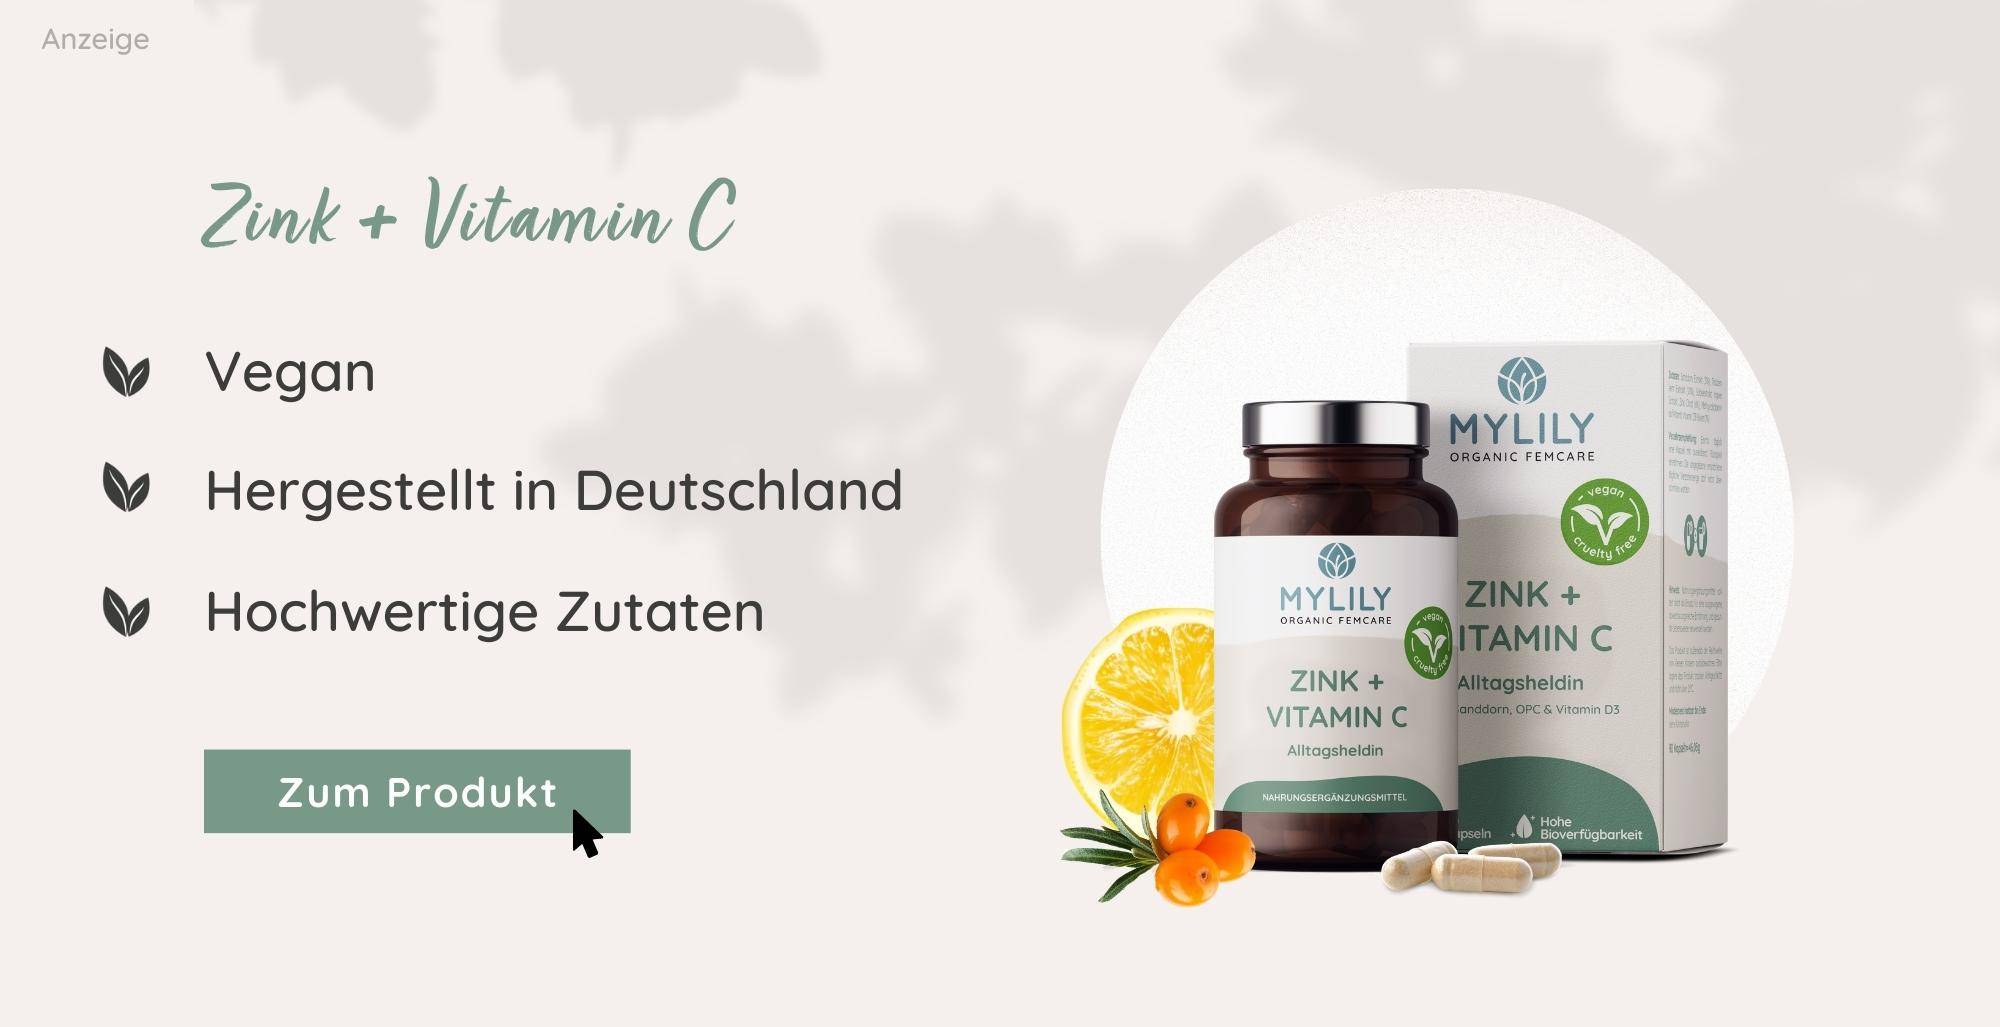 Vitamin C und Zink Nahrungsergänzung | MYLILY organic femcare | vegan & hergestellt in Deutschland | in Kapselform oder als Pulver einnehmbar 